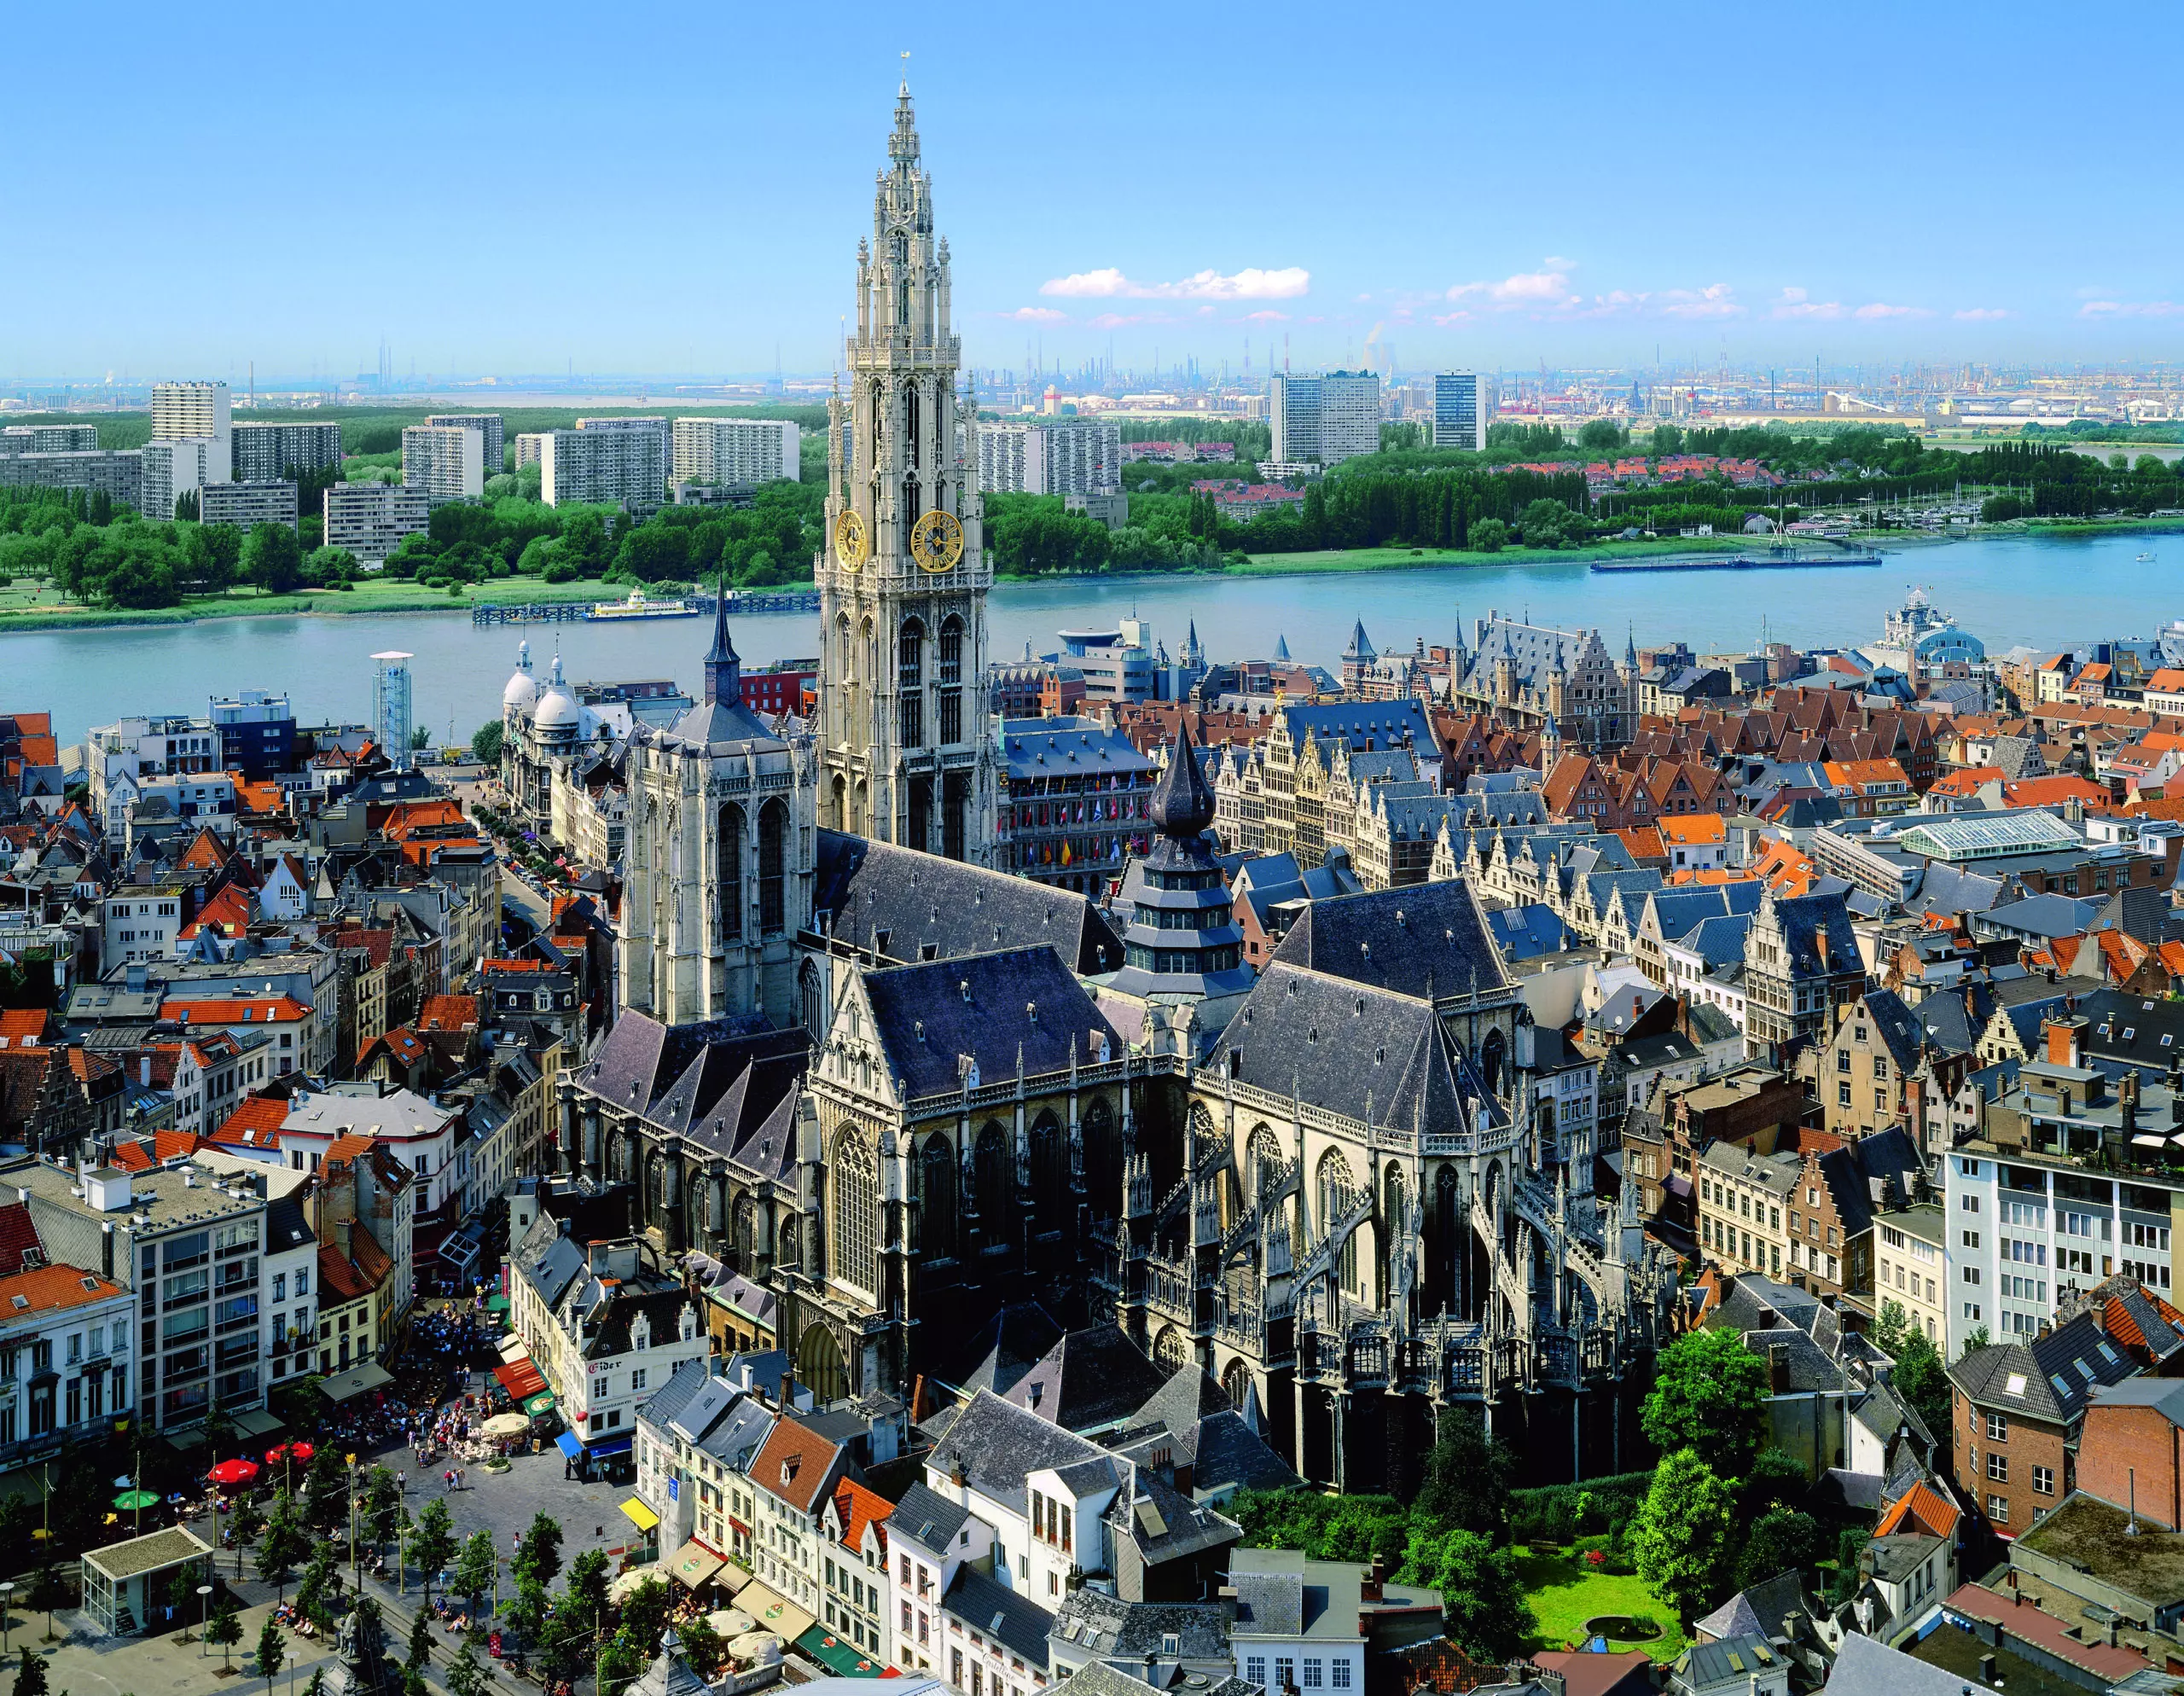 Wandbild (5814) Antwerpen from the sky by Günter Graefenhain/HUBER IMAGES präsentiert: Technik,Architektur,Landschaften,Häuser,Sonstige Architektur,Sehenswürdigkeiten,Luftaufnahmen